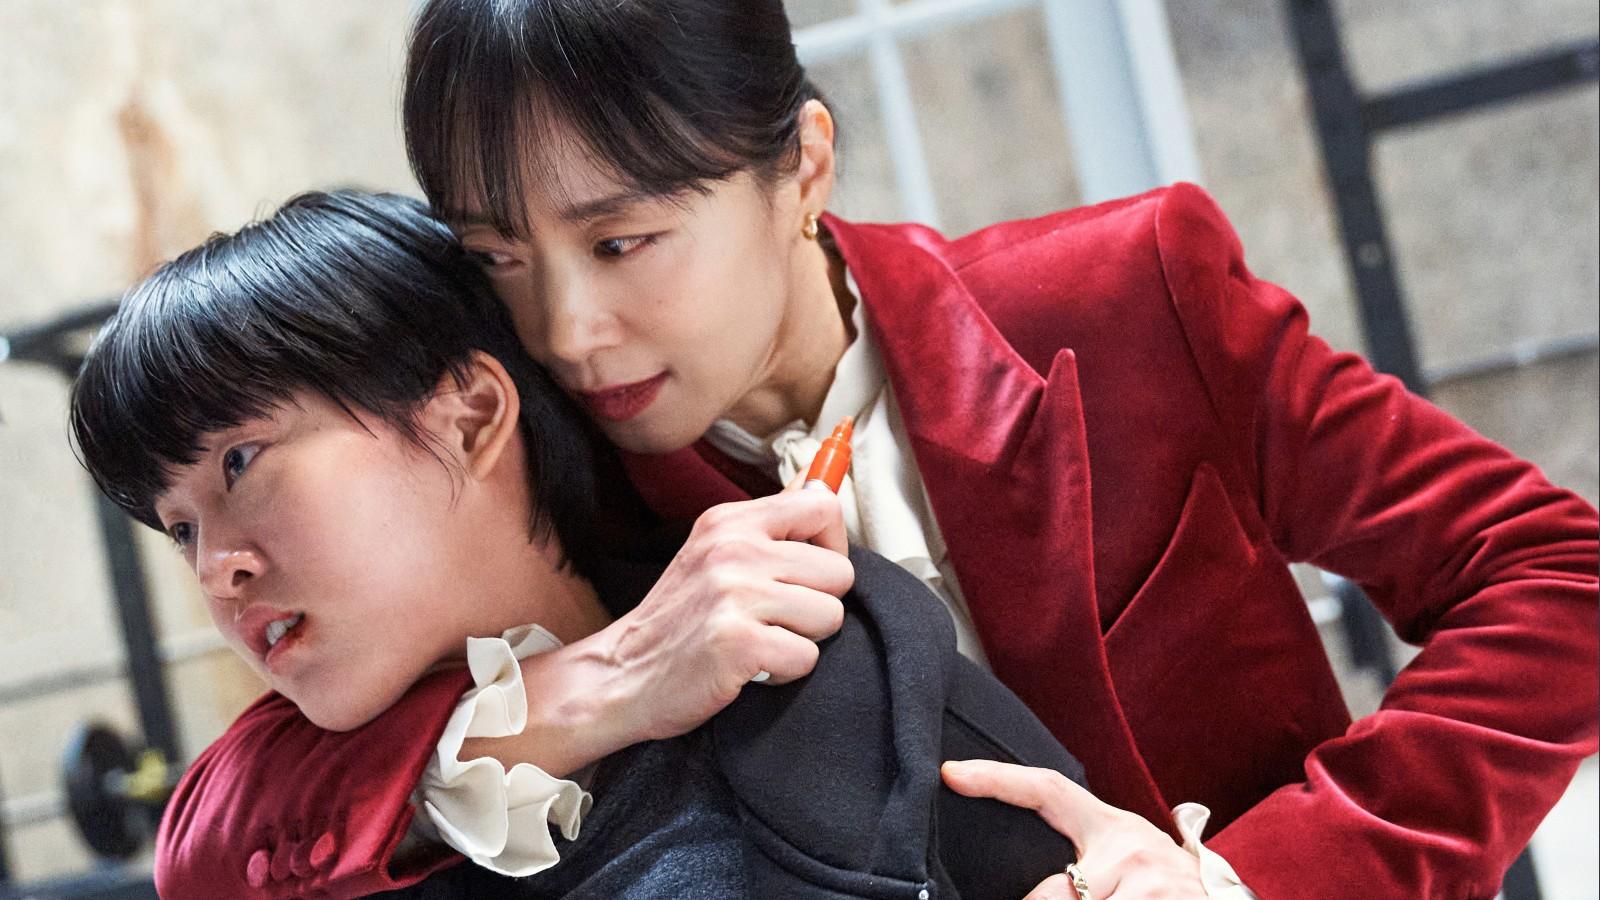 A still of Lee Yeon and Jeon Do-yeon in Kill Boksoon on Netflix